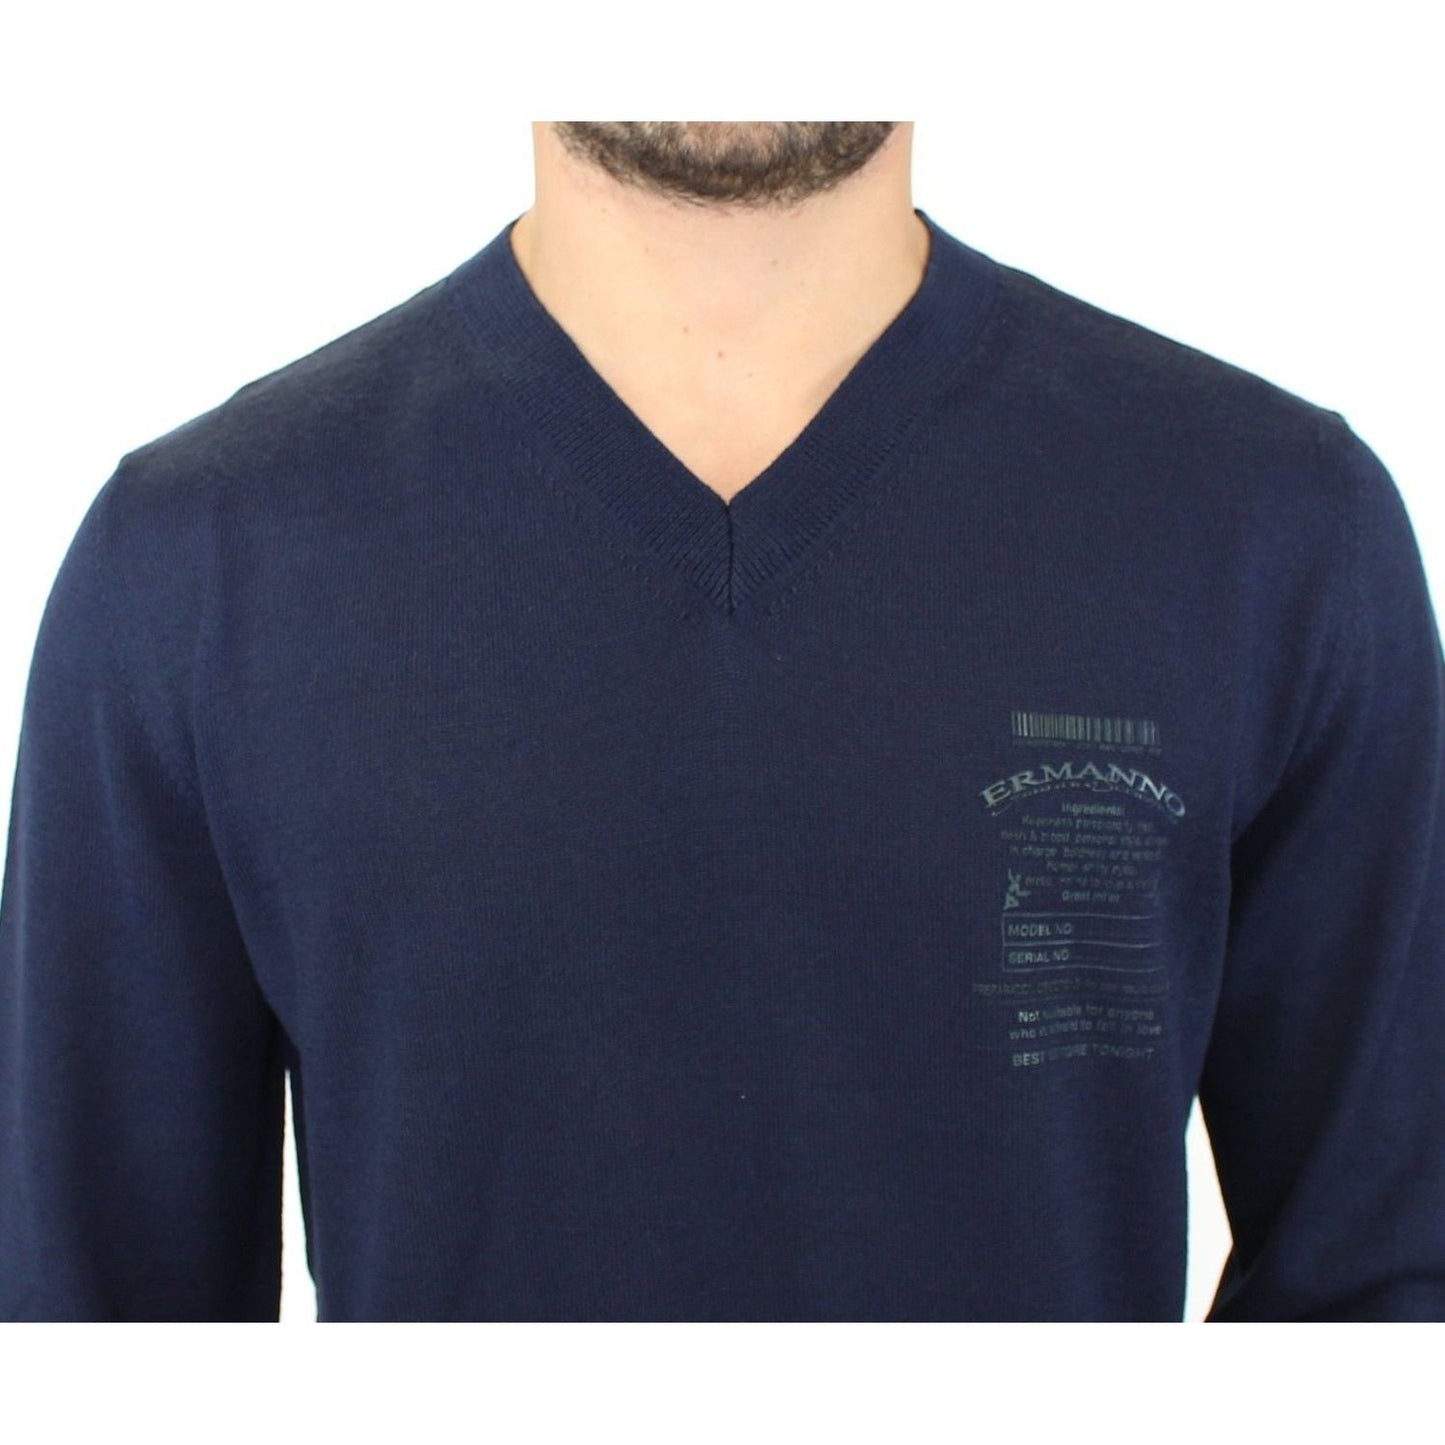 Ermanno Scervino Elegant Blue V-Neck Wool Blend Pullover blue-wool-blend-v-neck-pullover-sweater 37438-blue-wool-blend-v-neck-pullover-sweater-4.jpg